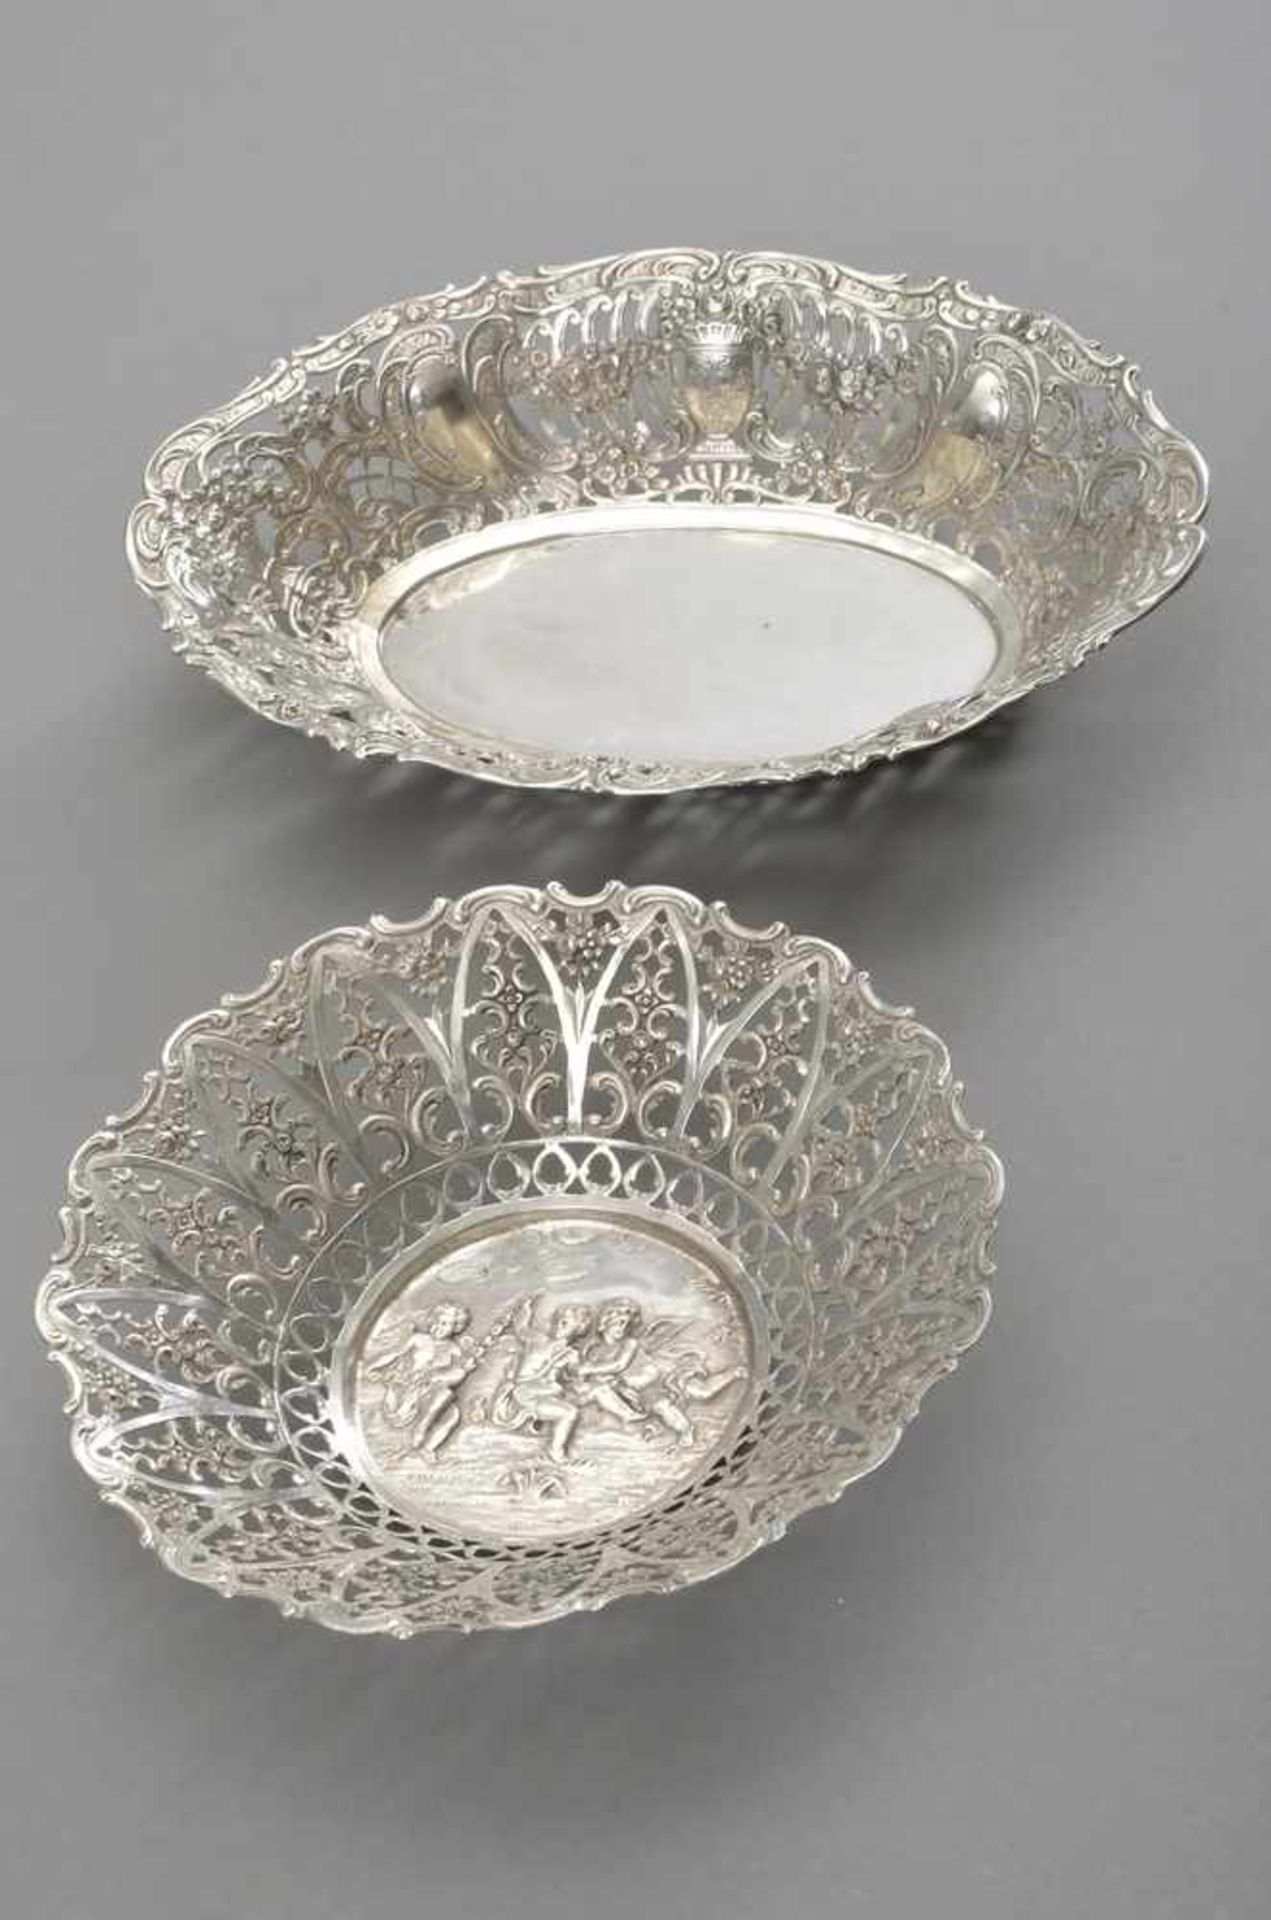 2 Diverse durchbrochene Schalen "Putti" und "Blütenfestons", Silber 800, 404g, 24,5x17cm, Ø 19cm - Image 2 of 2